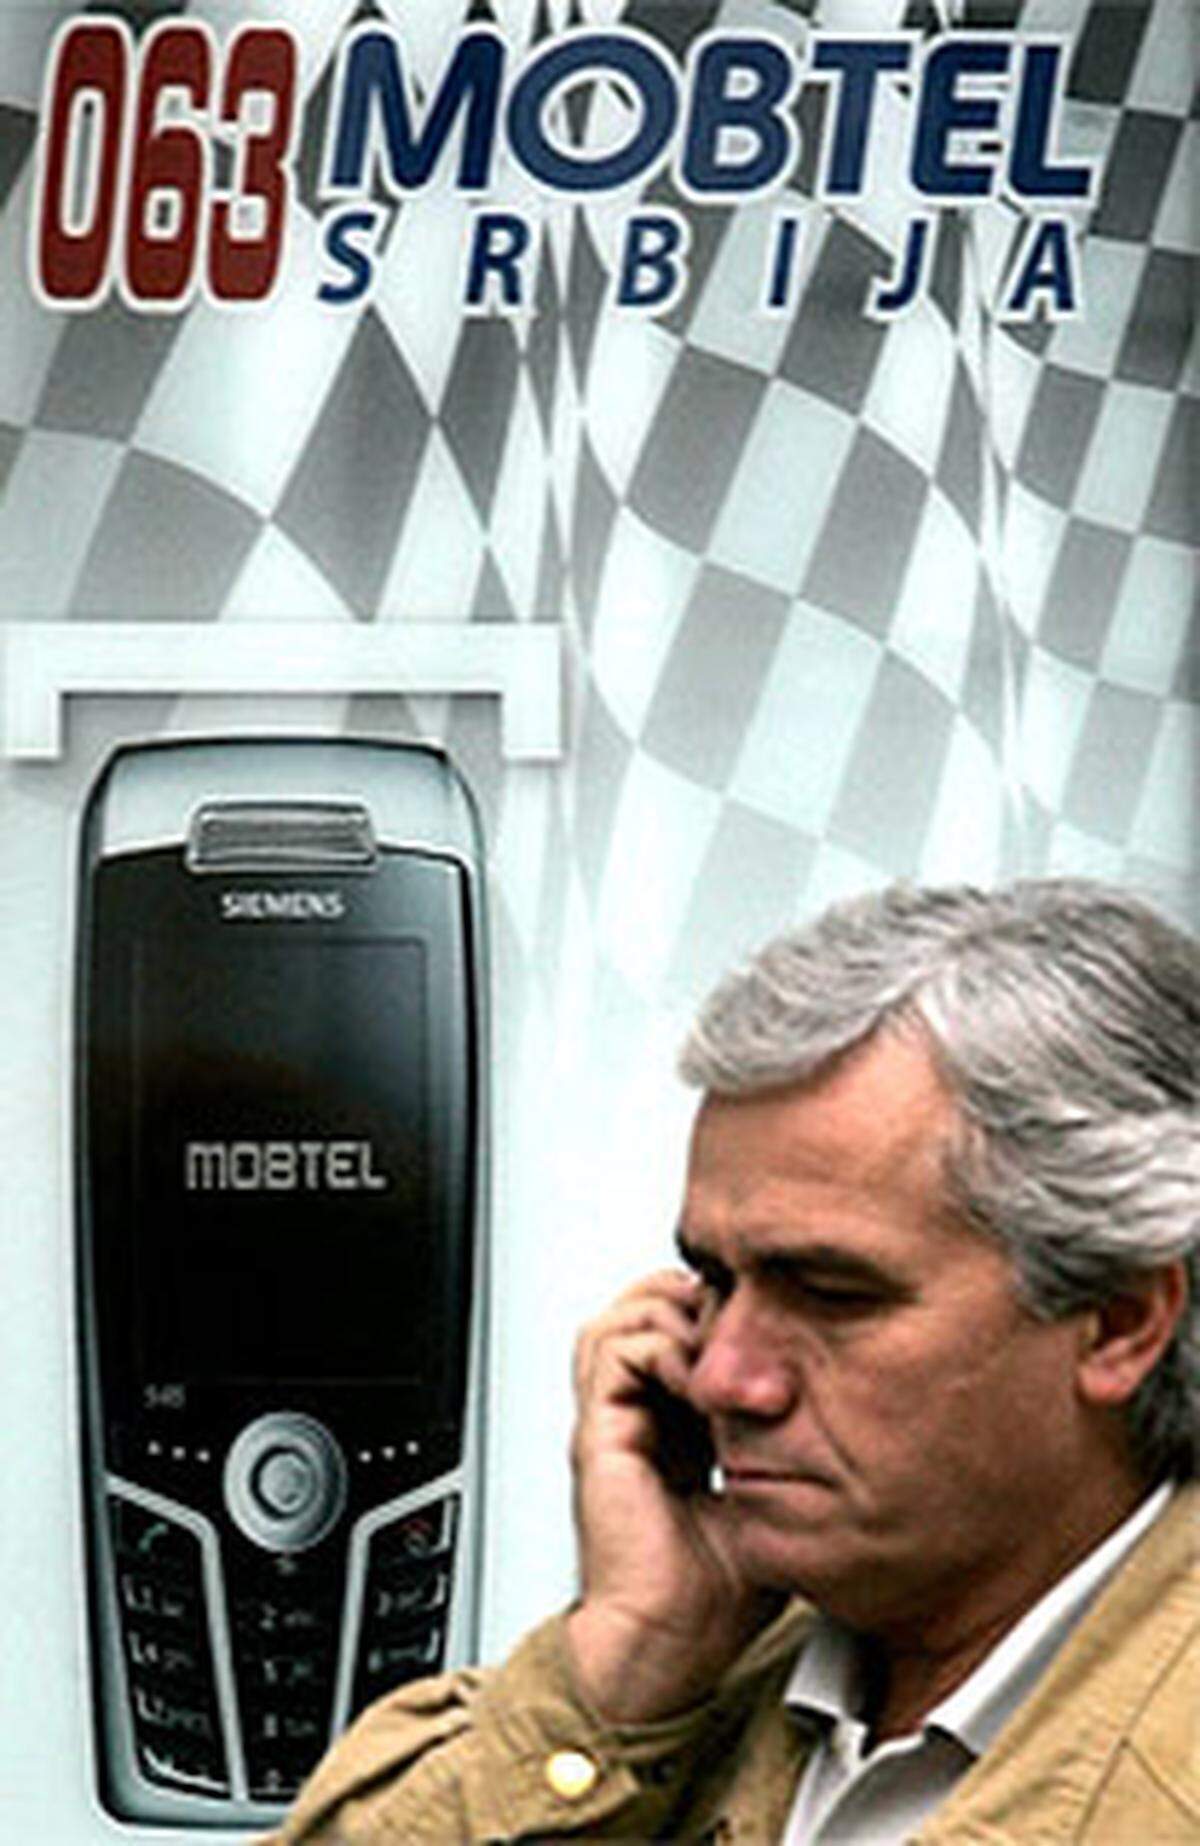 Weniger gut lief es in Serbien. Die norwegische Telenor bremste die Telekom Austria bei der Versteigerung der von Schlaff & Co. übernommenen Mobtel aus. Interventionen des damaligen BZÖ-Vizekanzlers Hubert Gorbach scheiterten.